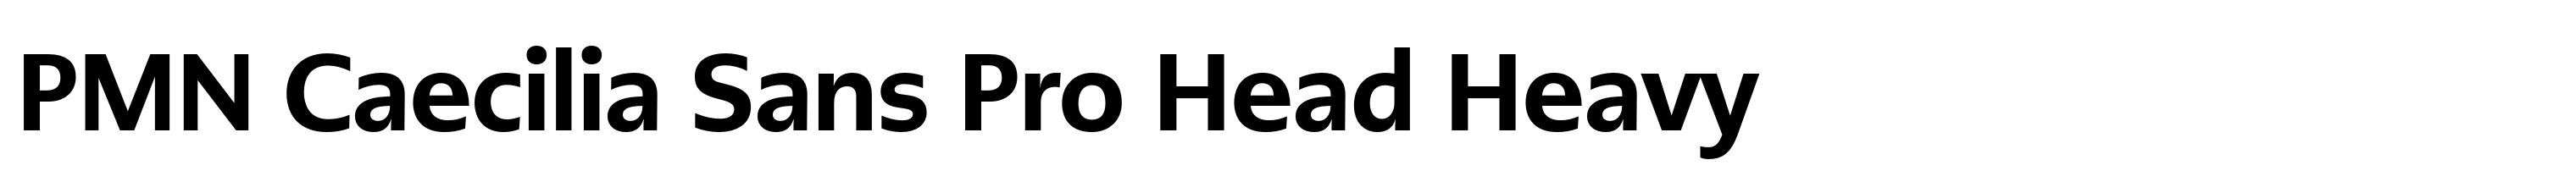 PMN Caecilia Sans Pro Head Heavy